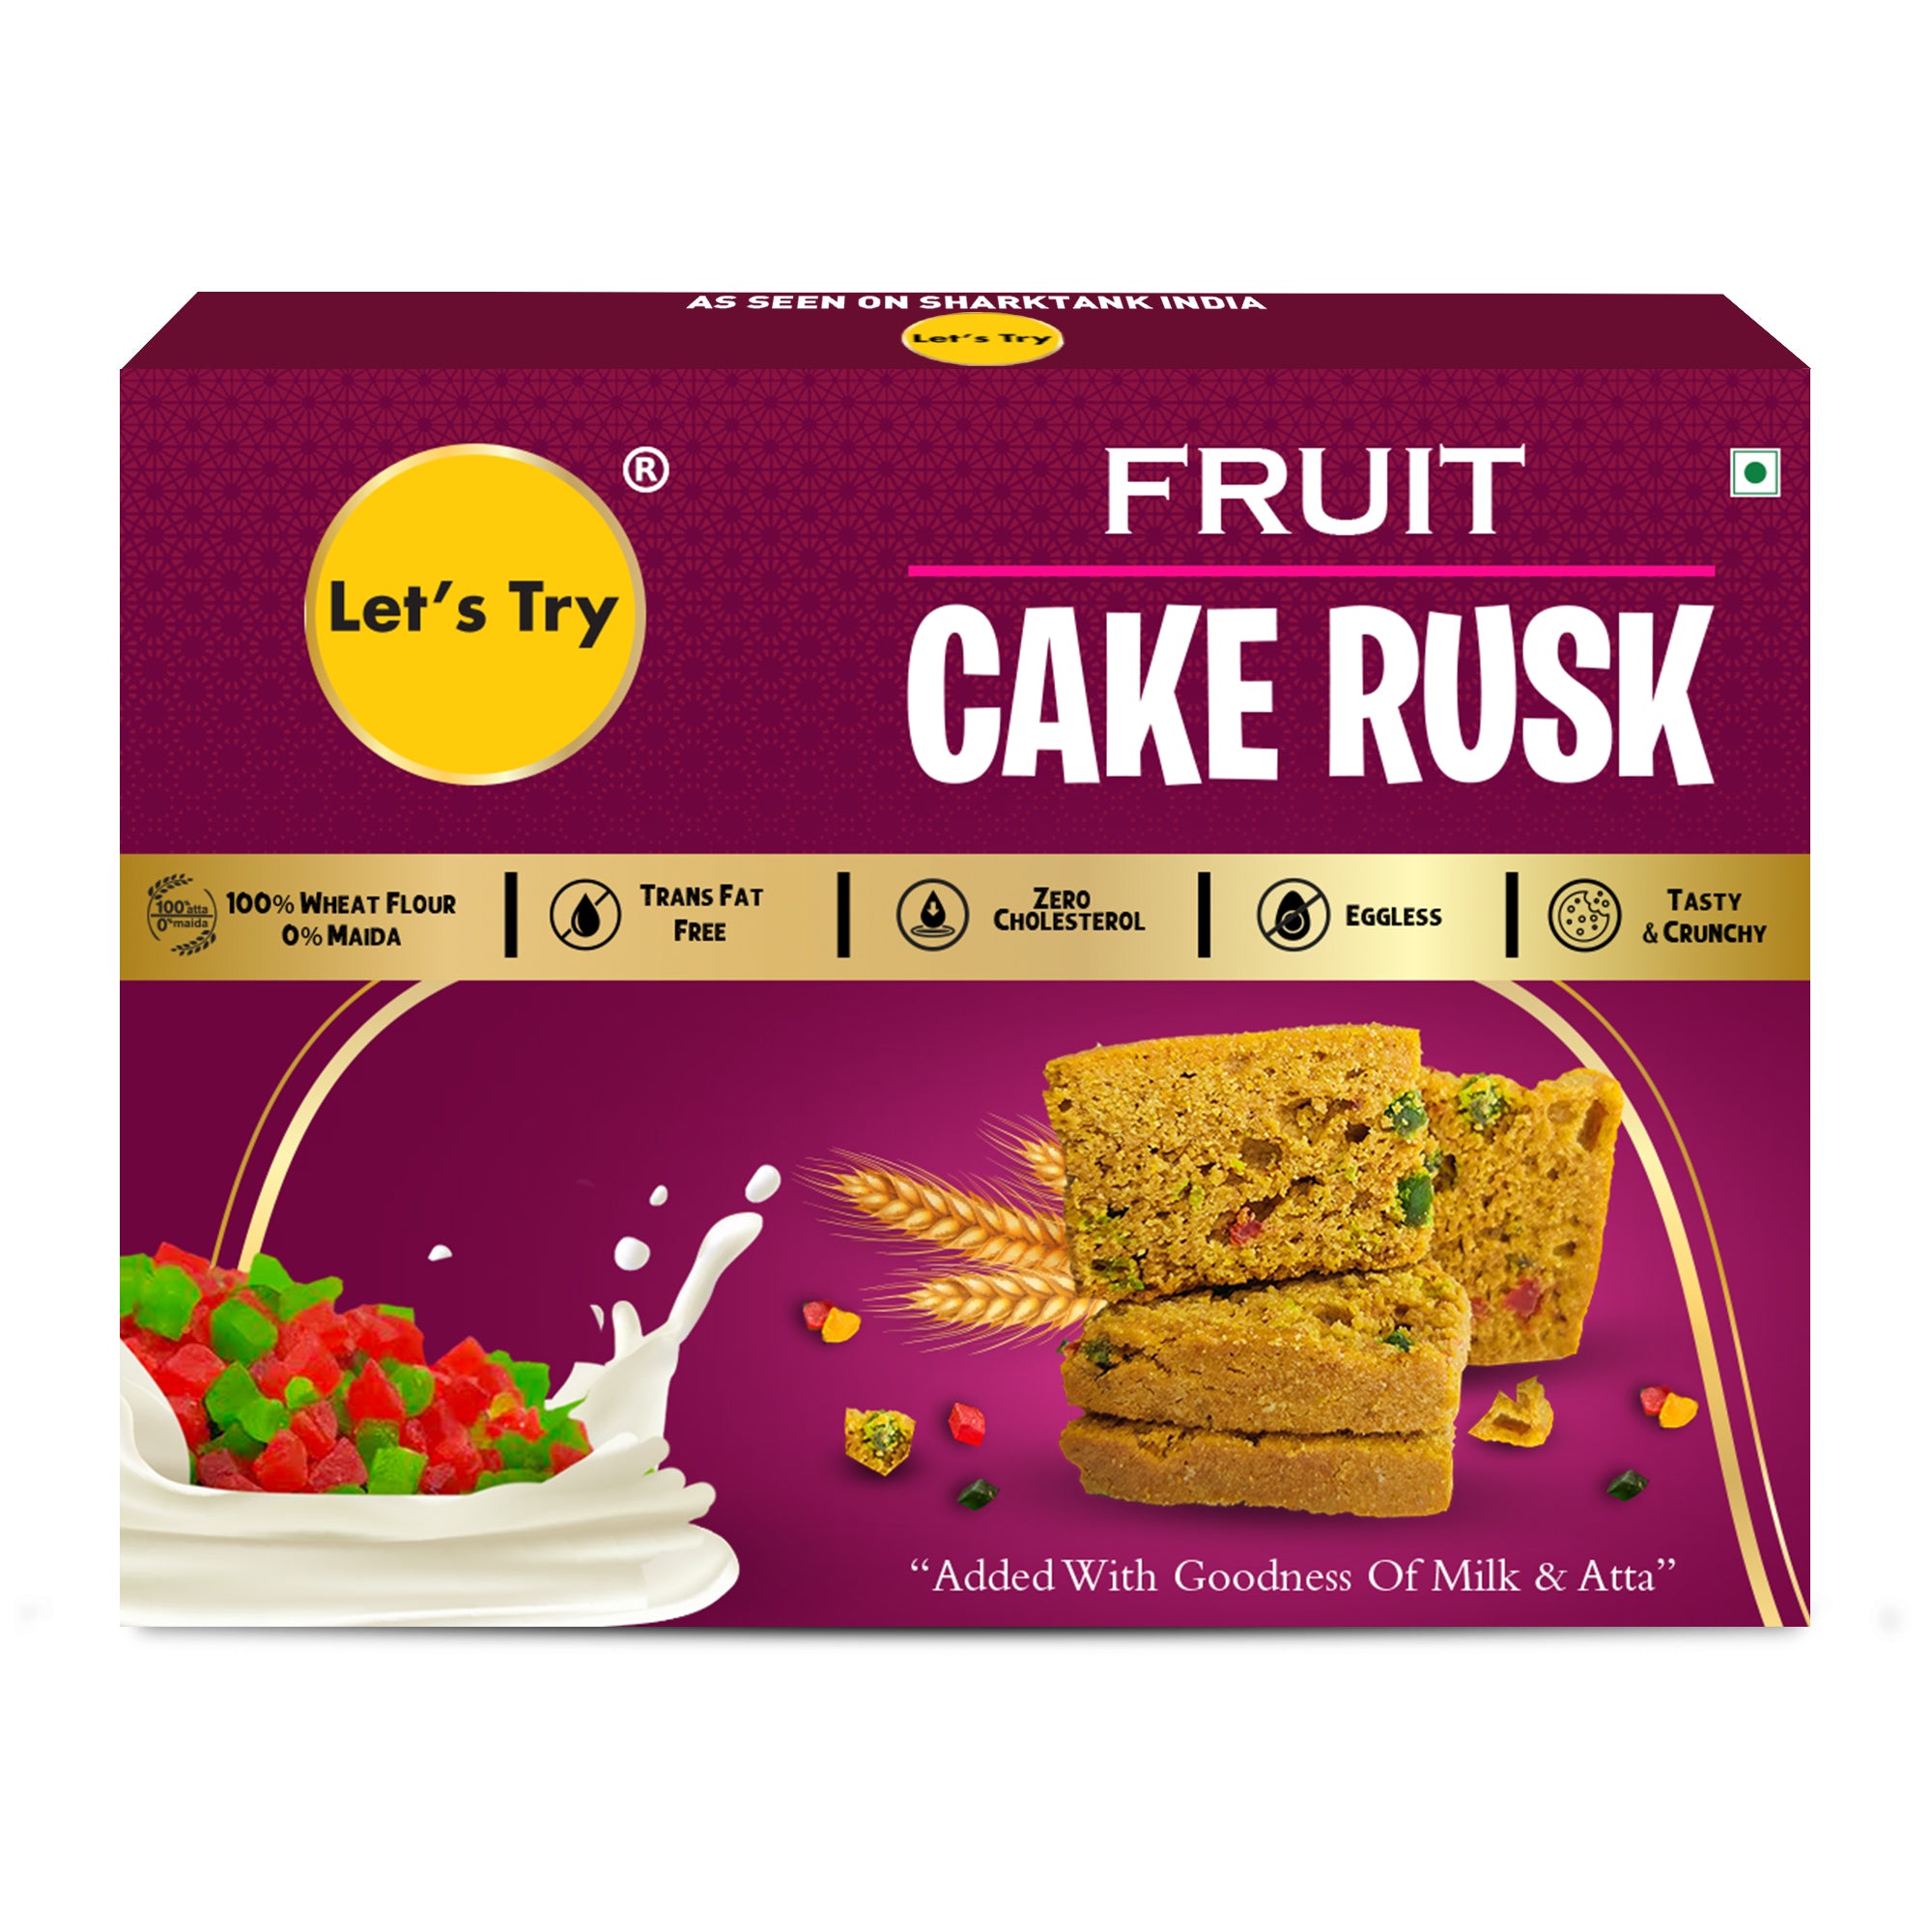 Online Fruit Cake Rusk Delivery in Delhi